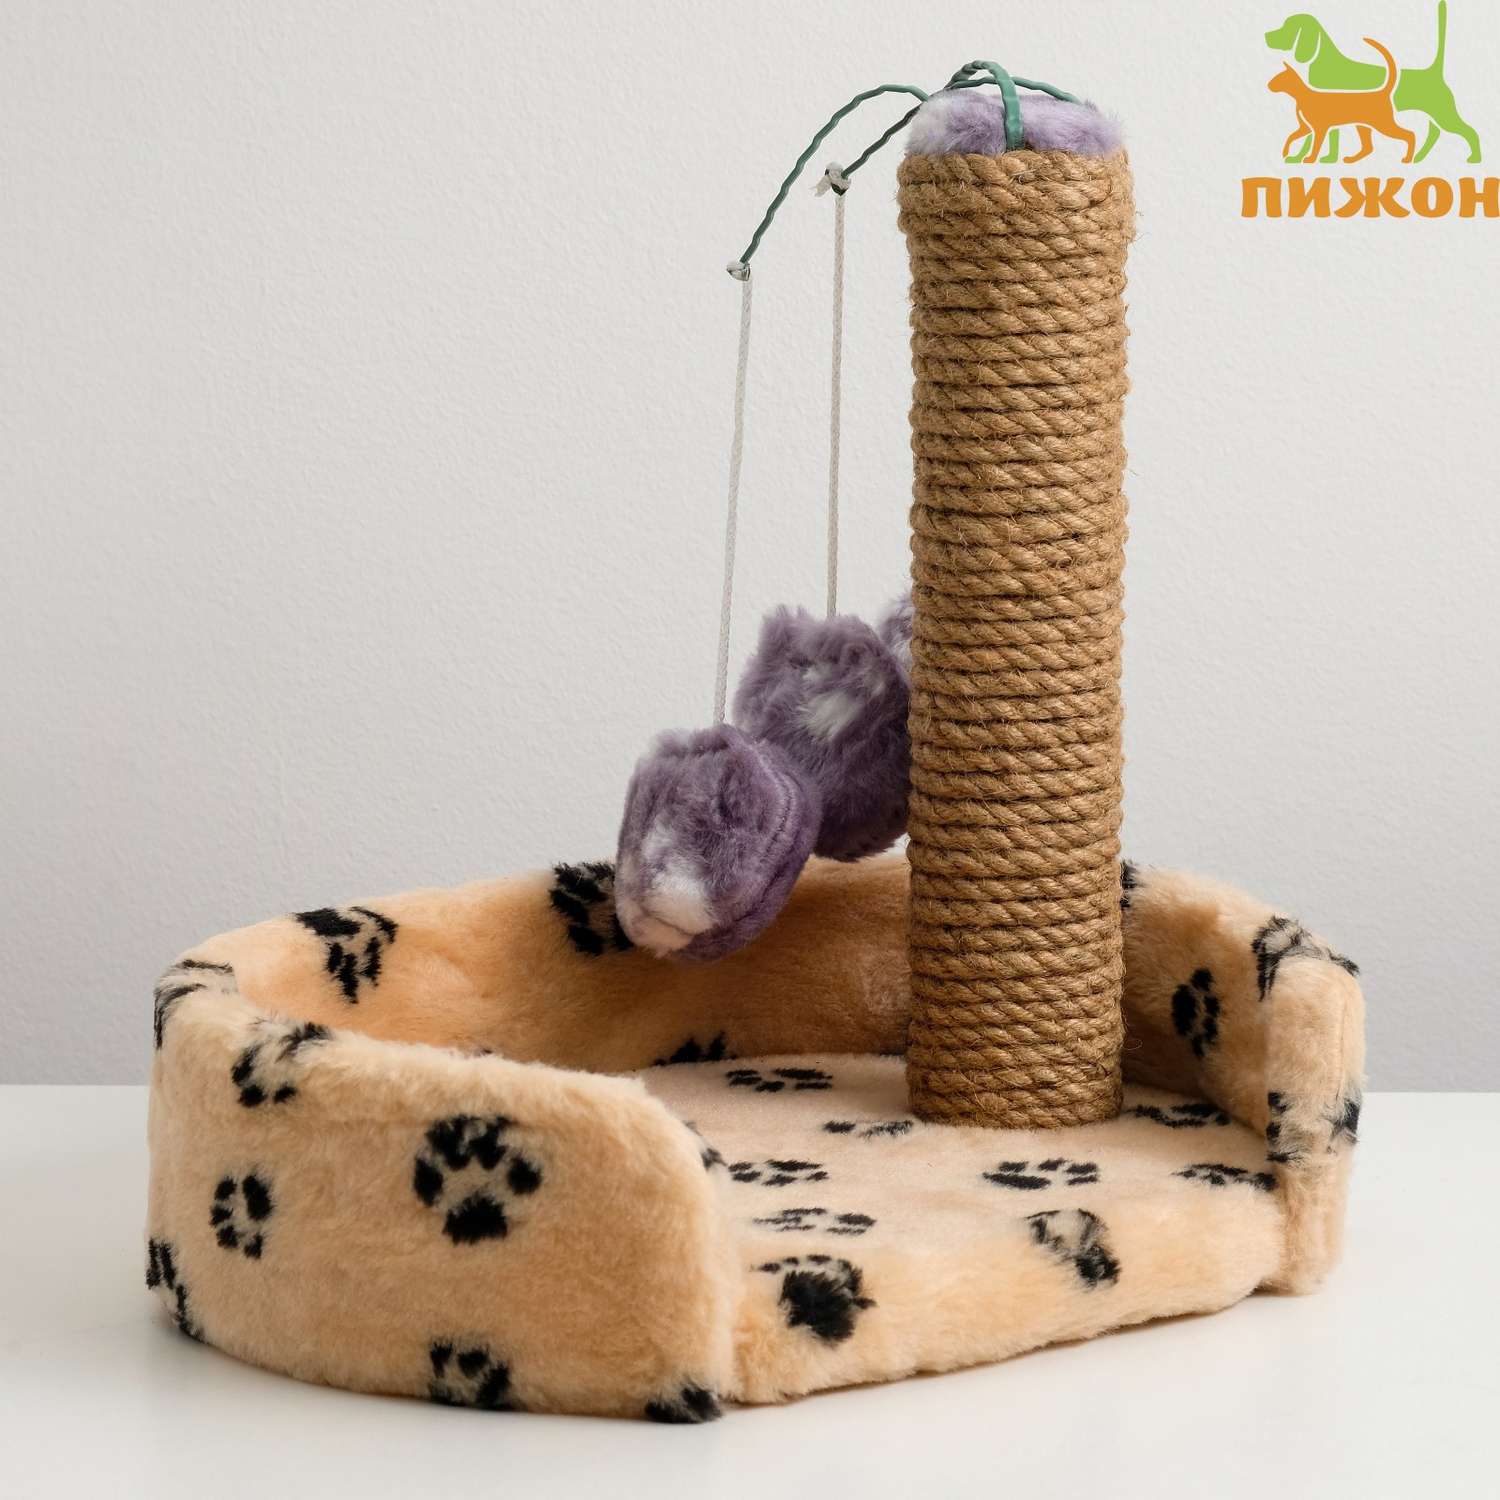 Лежанка Пижон с когтеточкой для котят 34х26х34 см джут микс цветов - фото 1